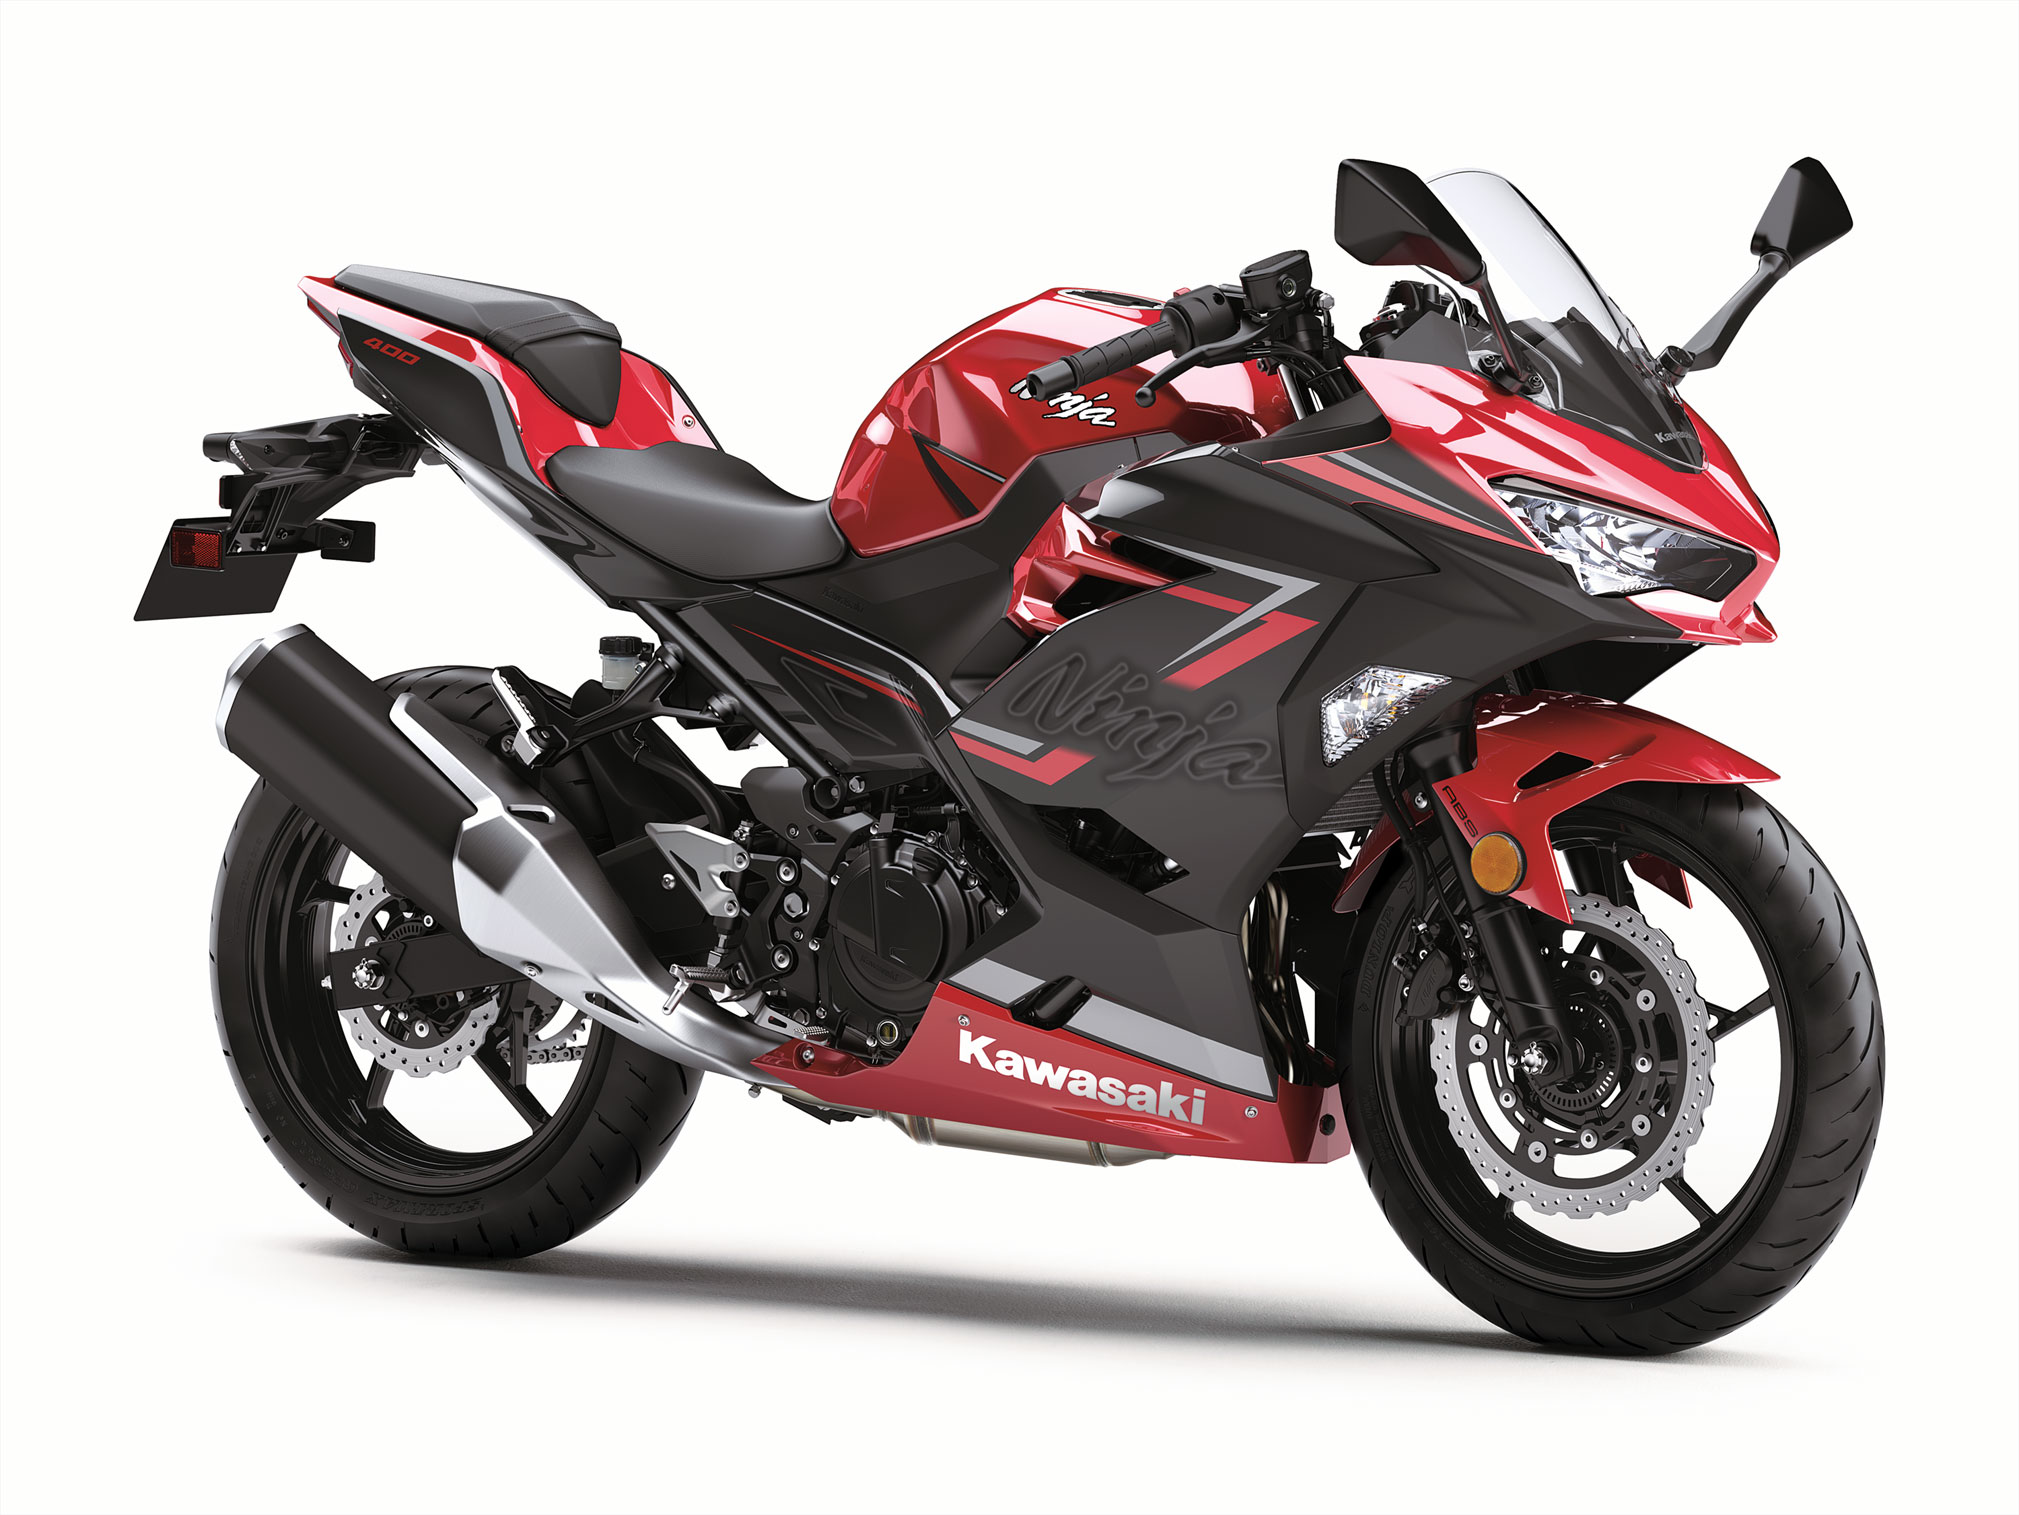 2019 Kawasaki Ninja  400 ABS Guide  Total Motorcycle